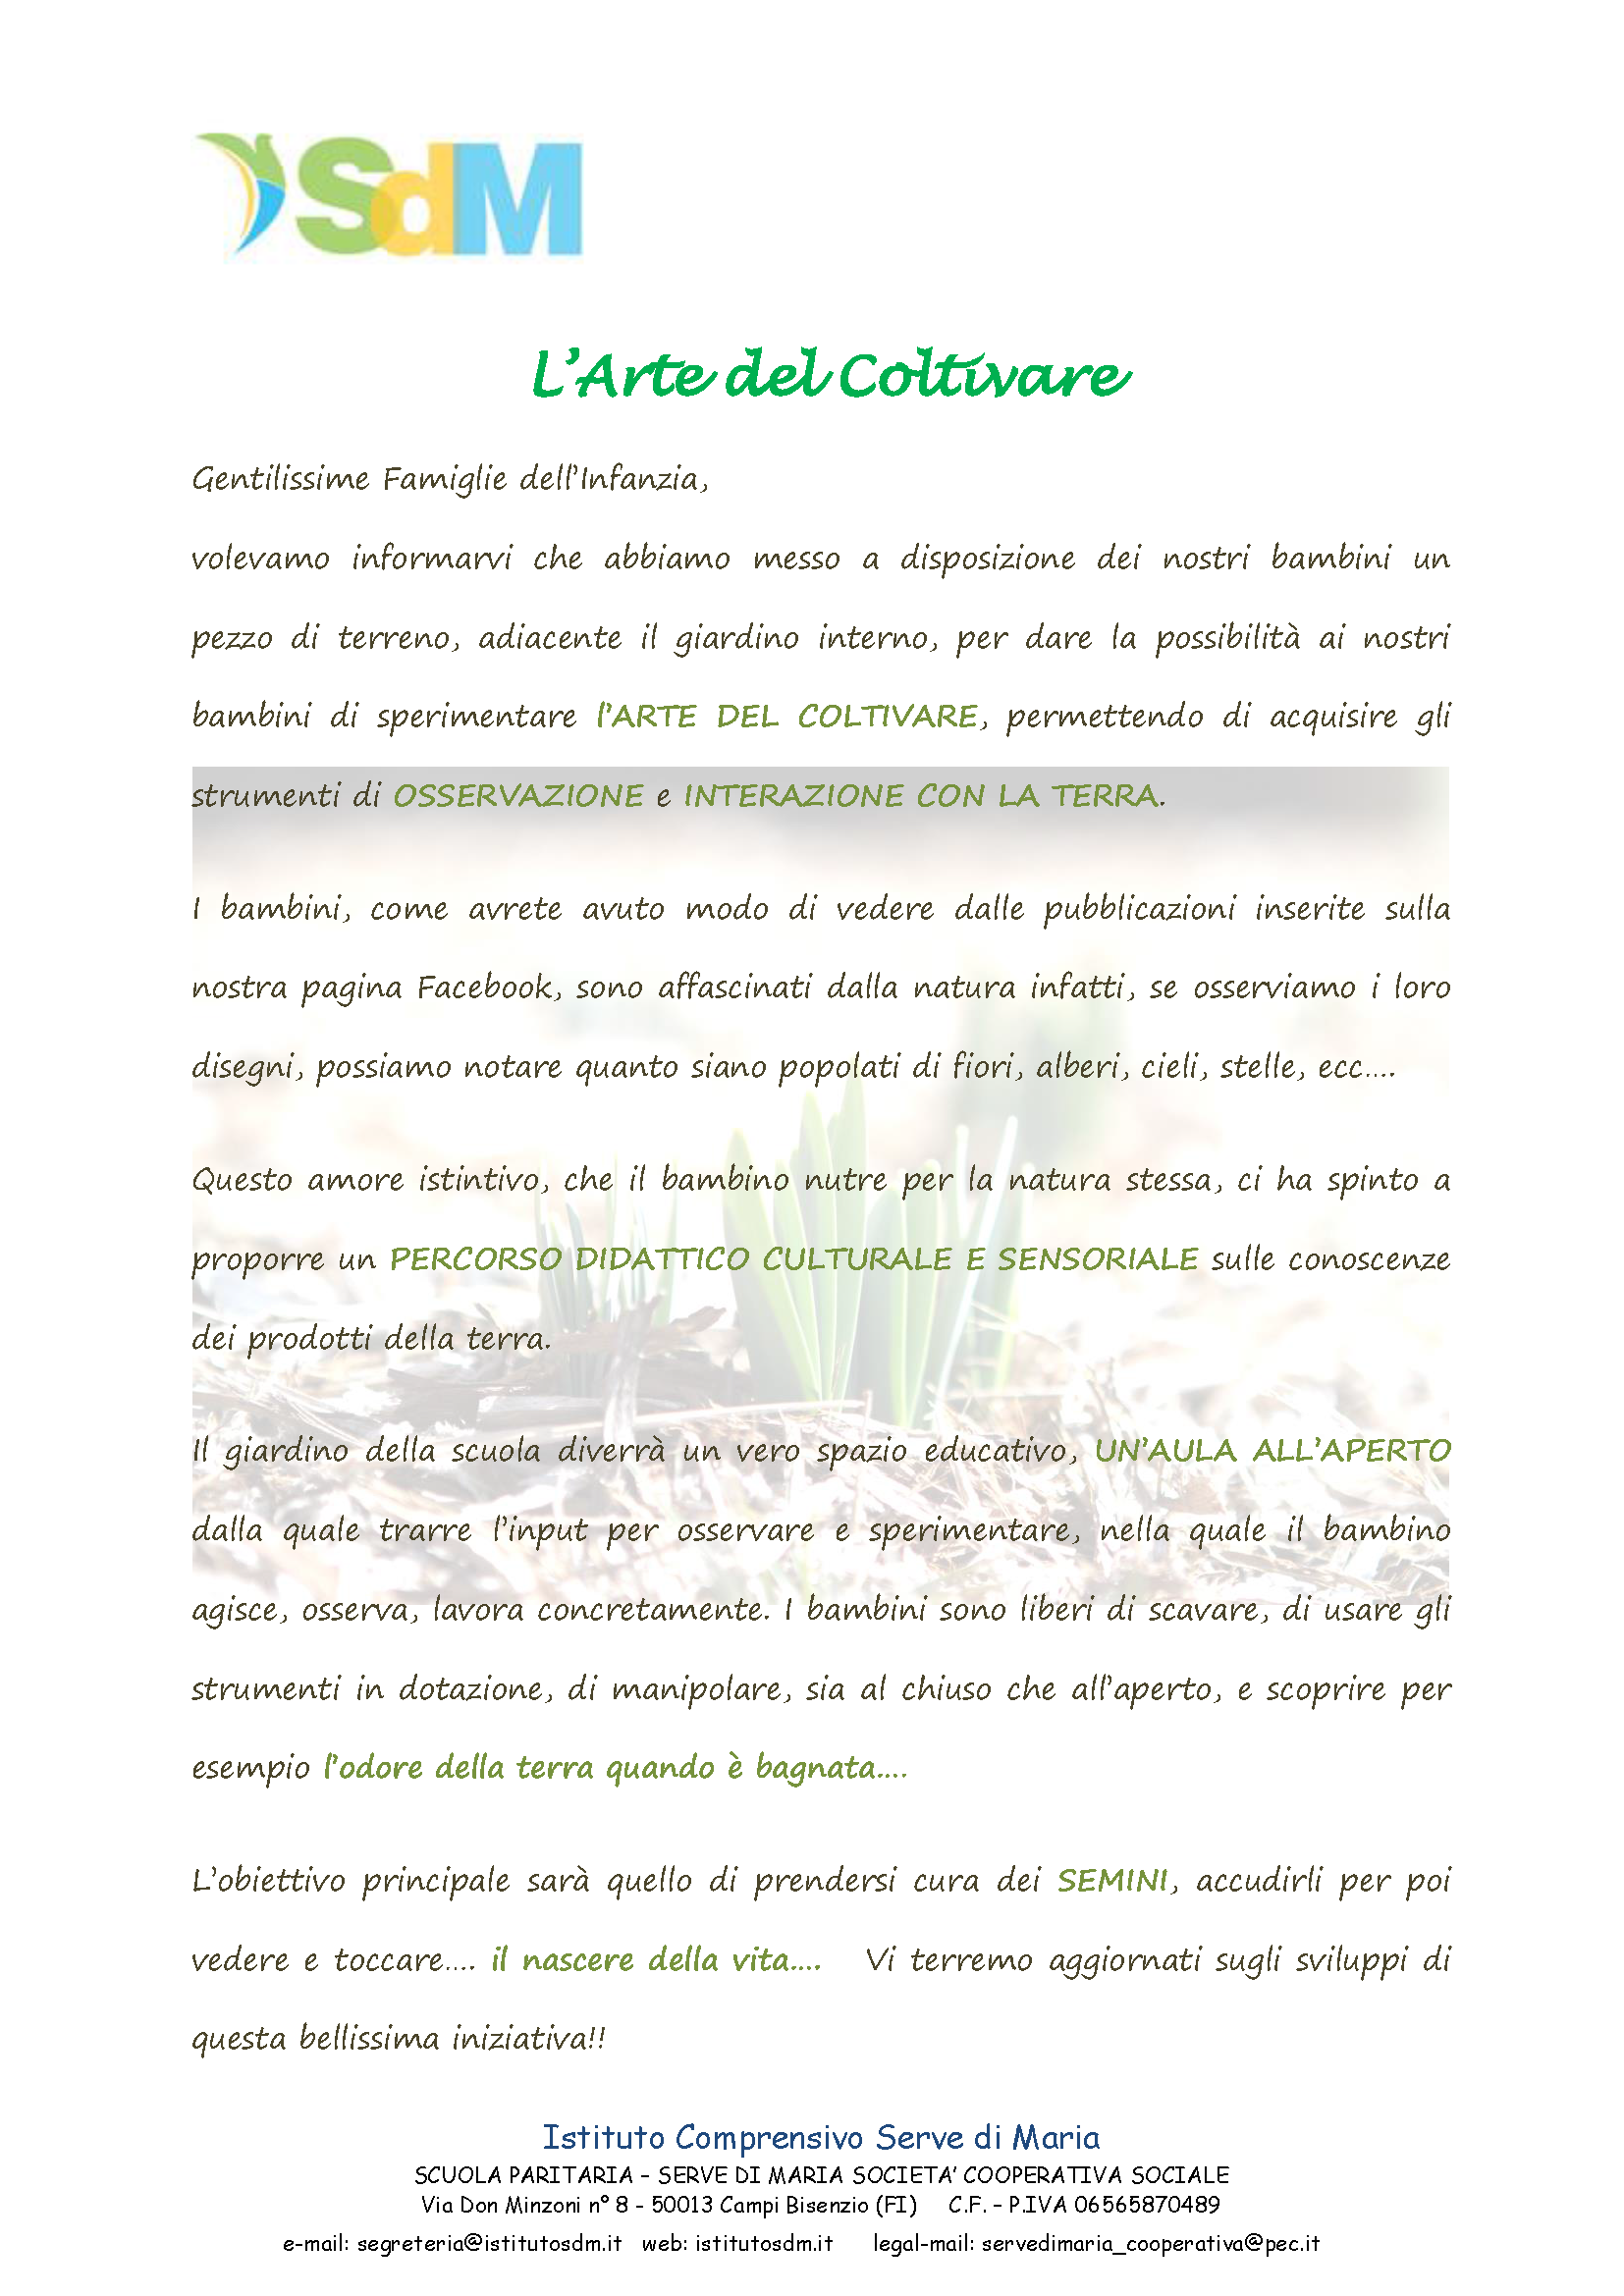 SDM_larte_del_coltivare.png